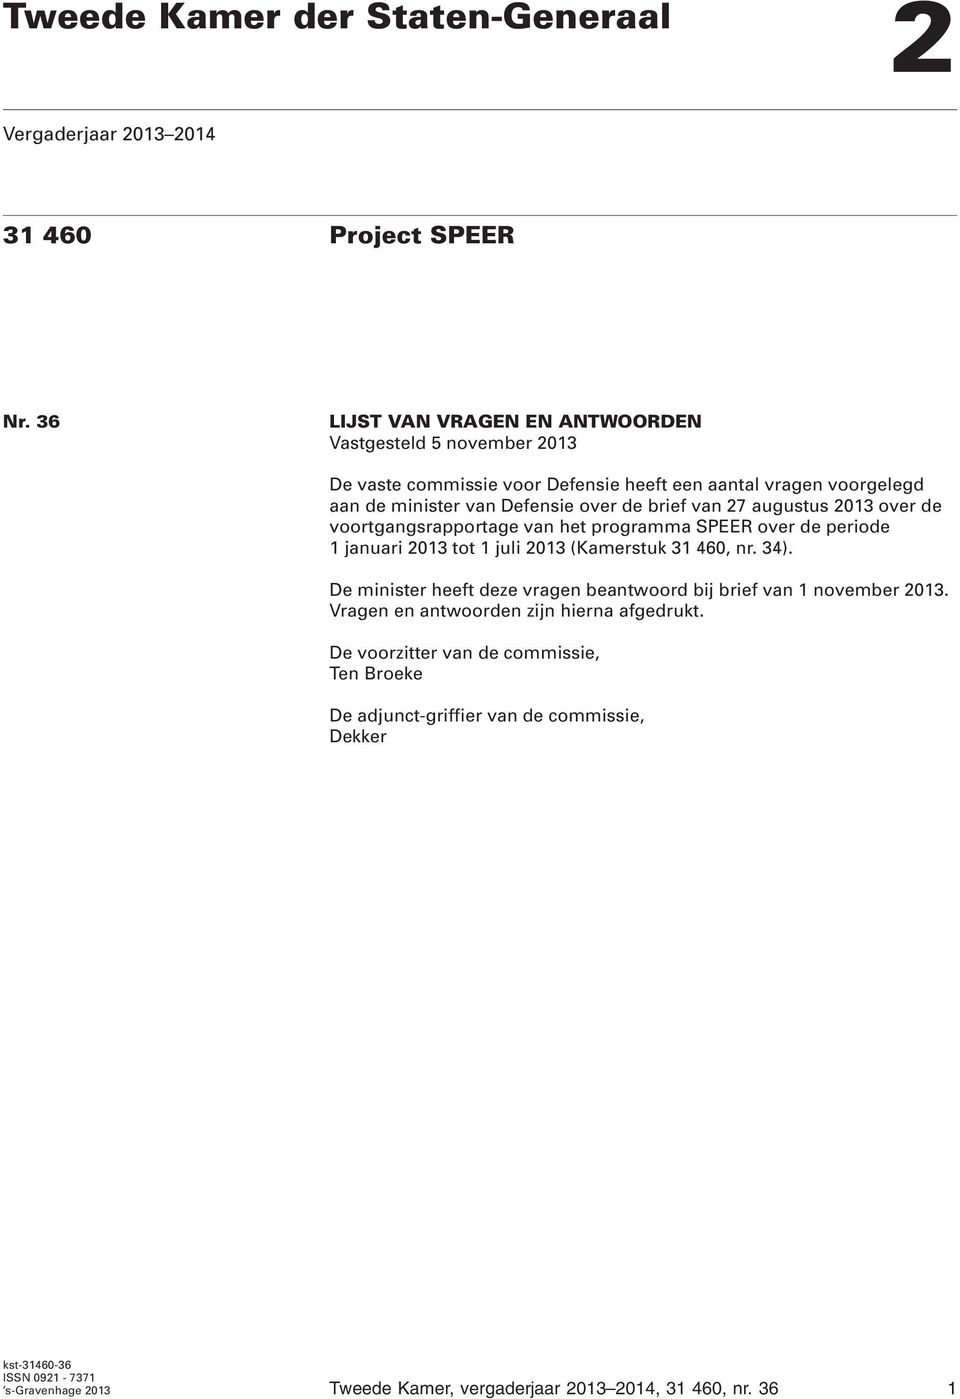 27 augustus 2013 over de voortgangsrapportage van het programma SPEER over de periode 1 januari 2013 tot 1 juli 2013 (Kamerstuk 31 460, nr. 34).